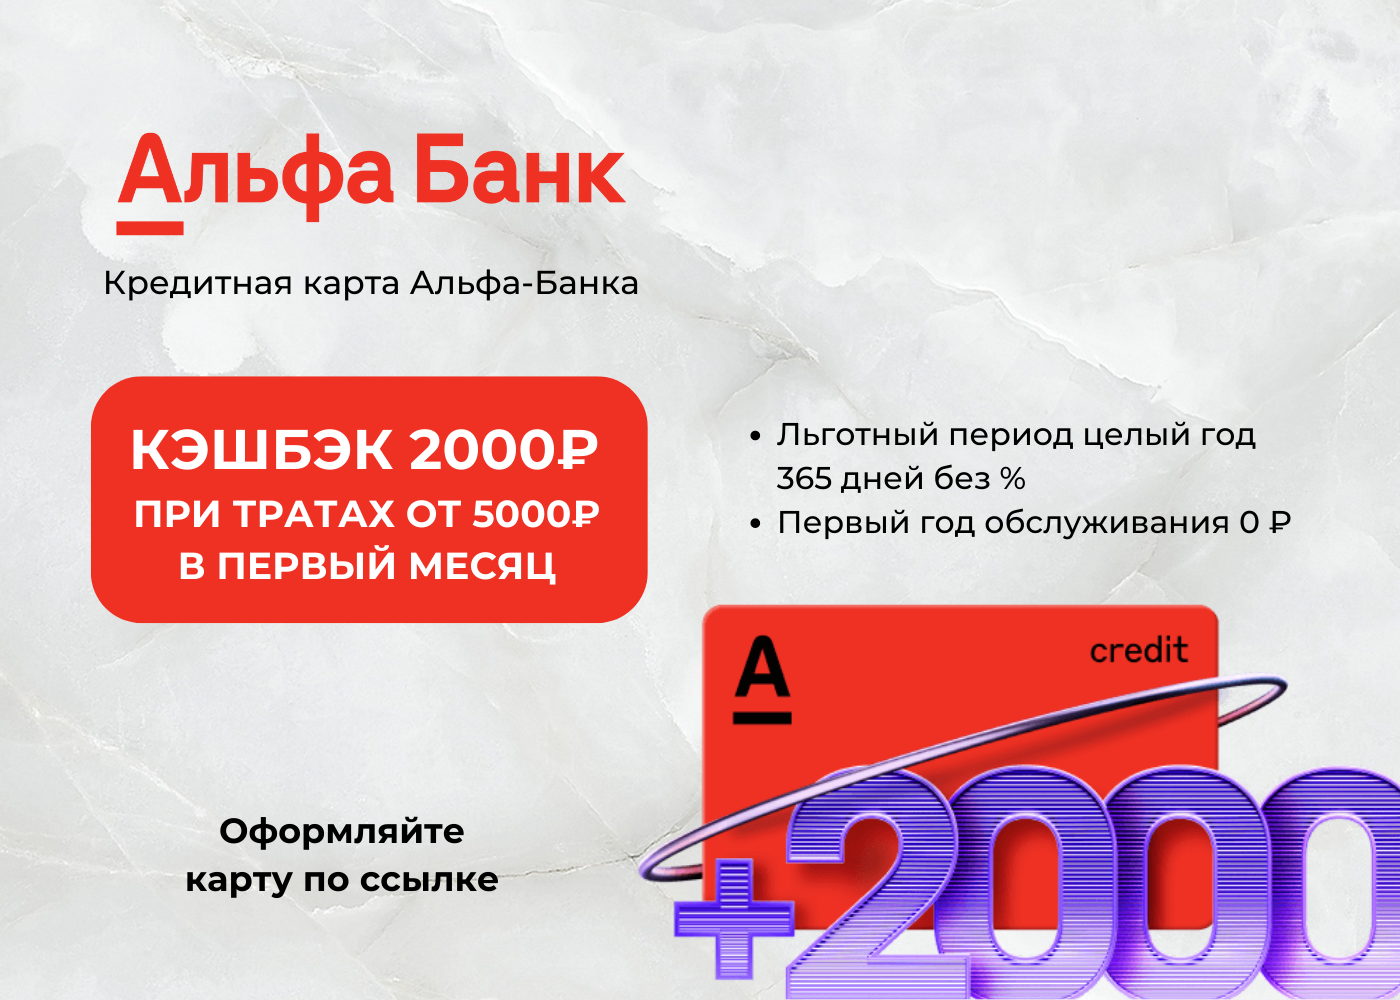 Кредитная карта альфа банка 120